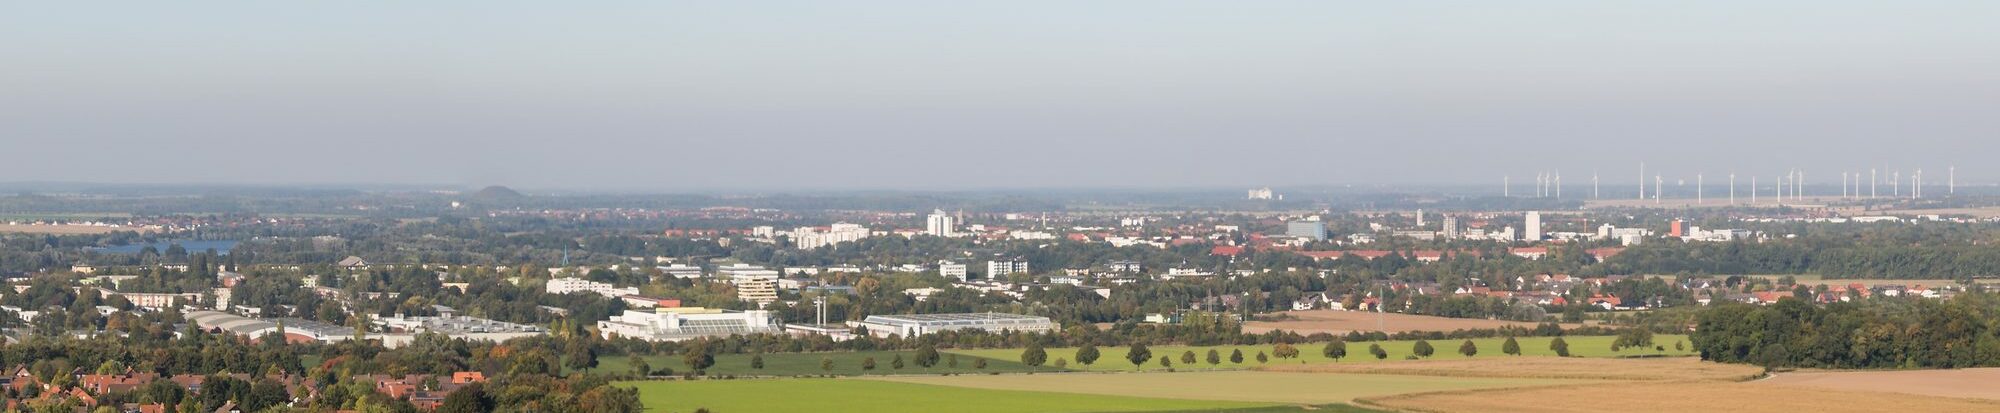 Salzgitter erhält verschiedene Städtebauförderprogramme.